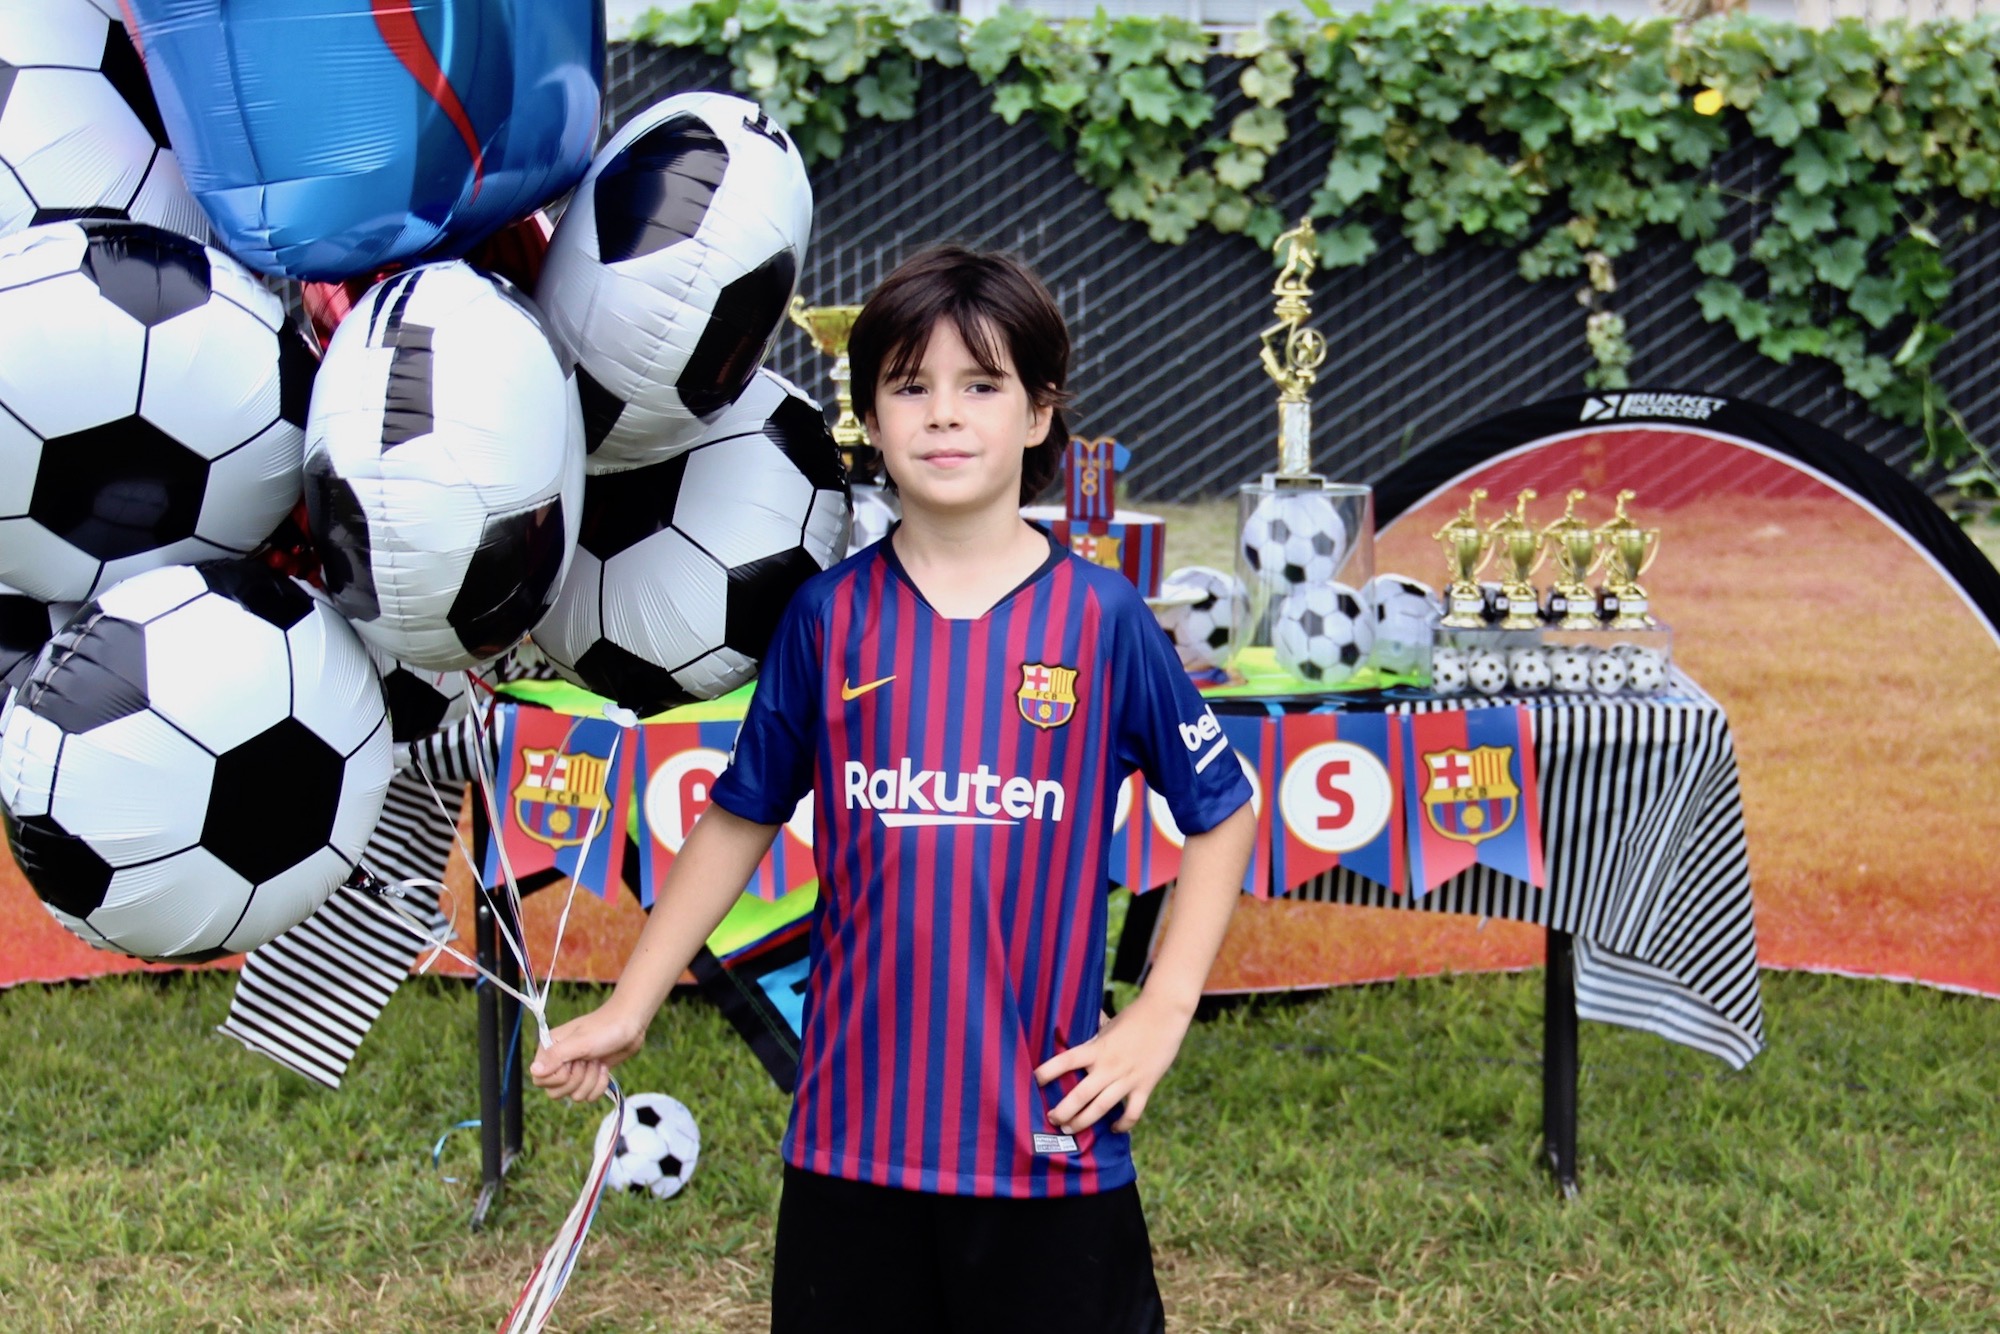 Cumpleaños tema Futbol | criandoando.com